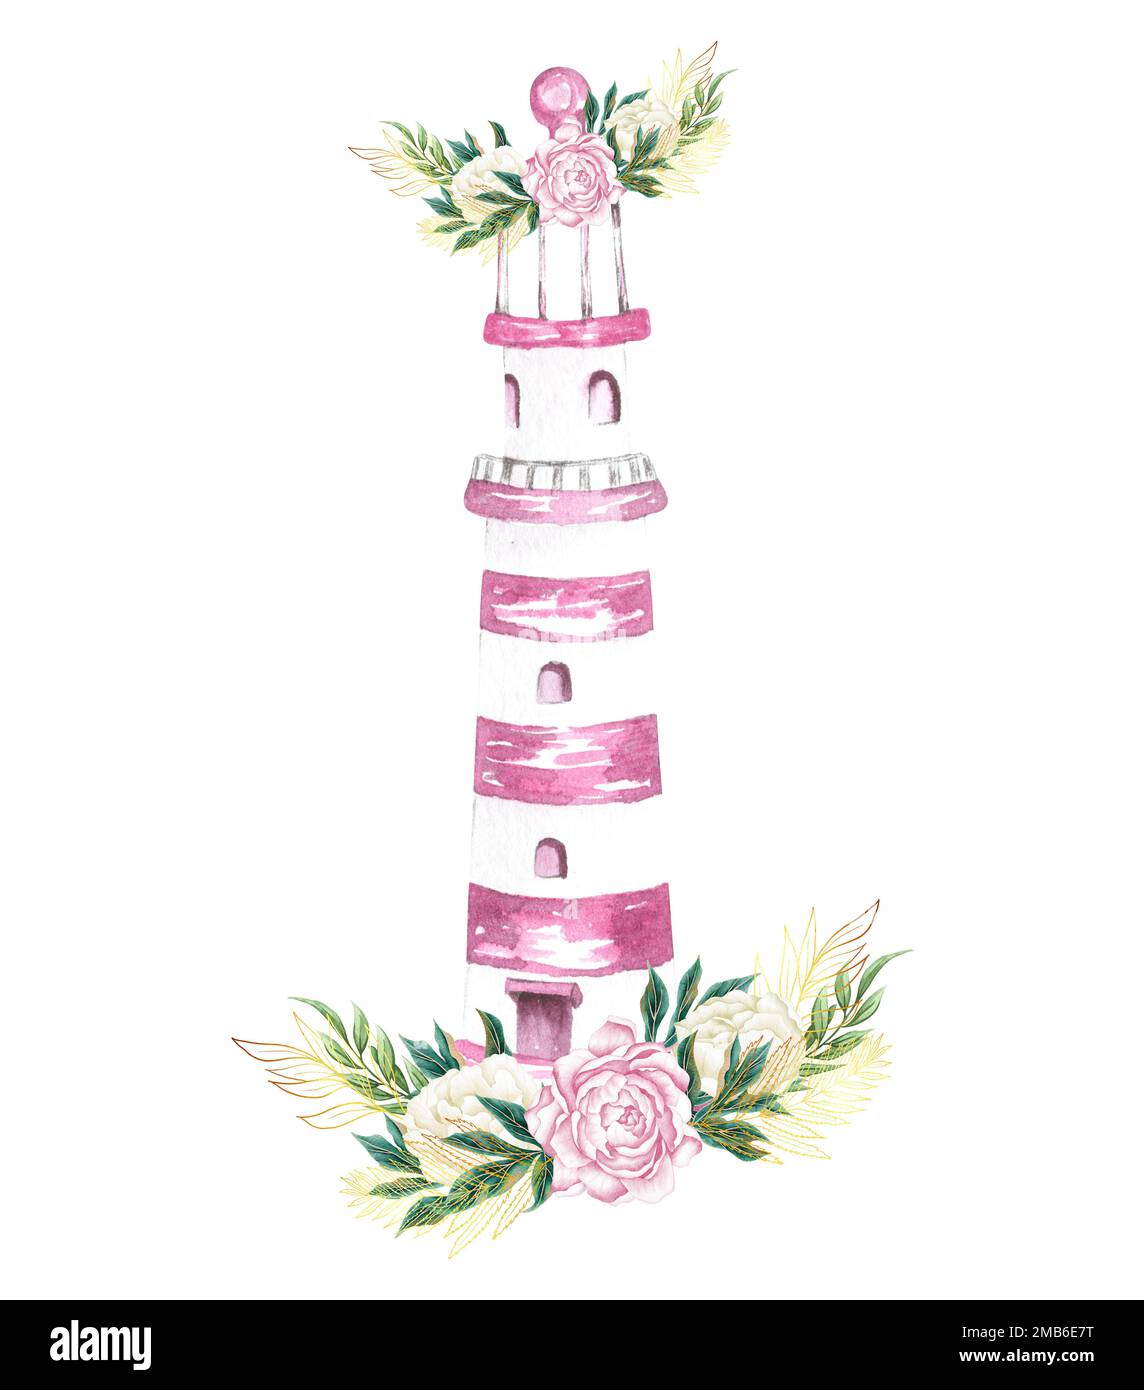 Aquarelle dessin à la main de fleurs marines, marines et roses avec phare et bouquet de fleurs Banque D'Images